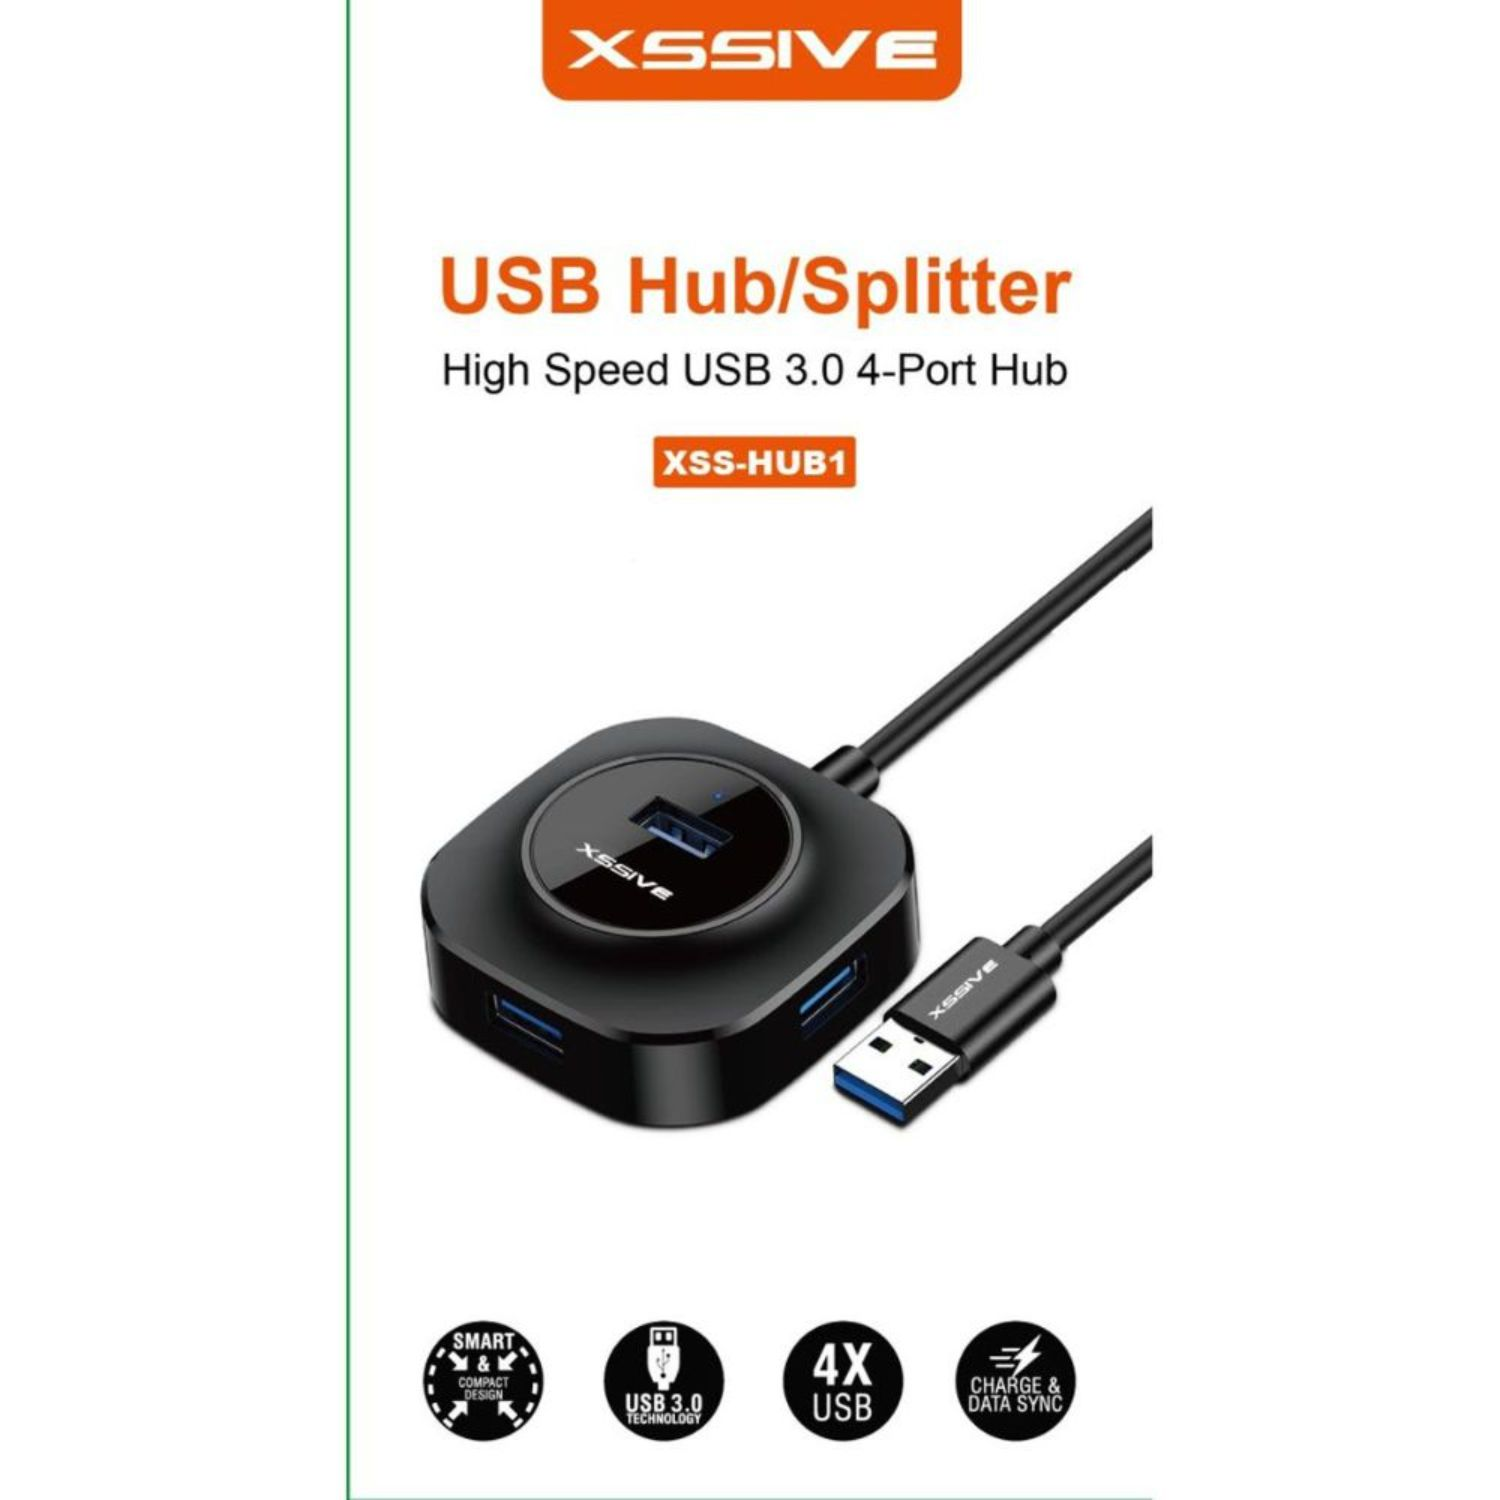 USB Schwarz USB, Gen 4x 1 HUB COFI Hub, Usb 3.0